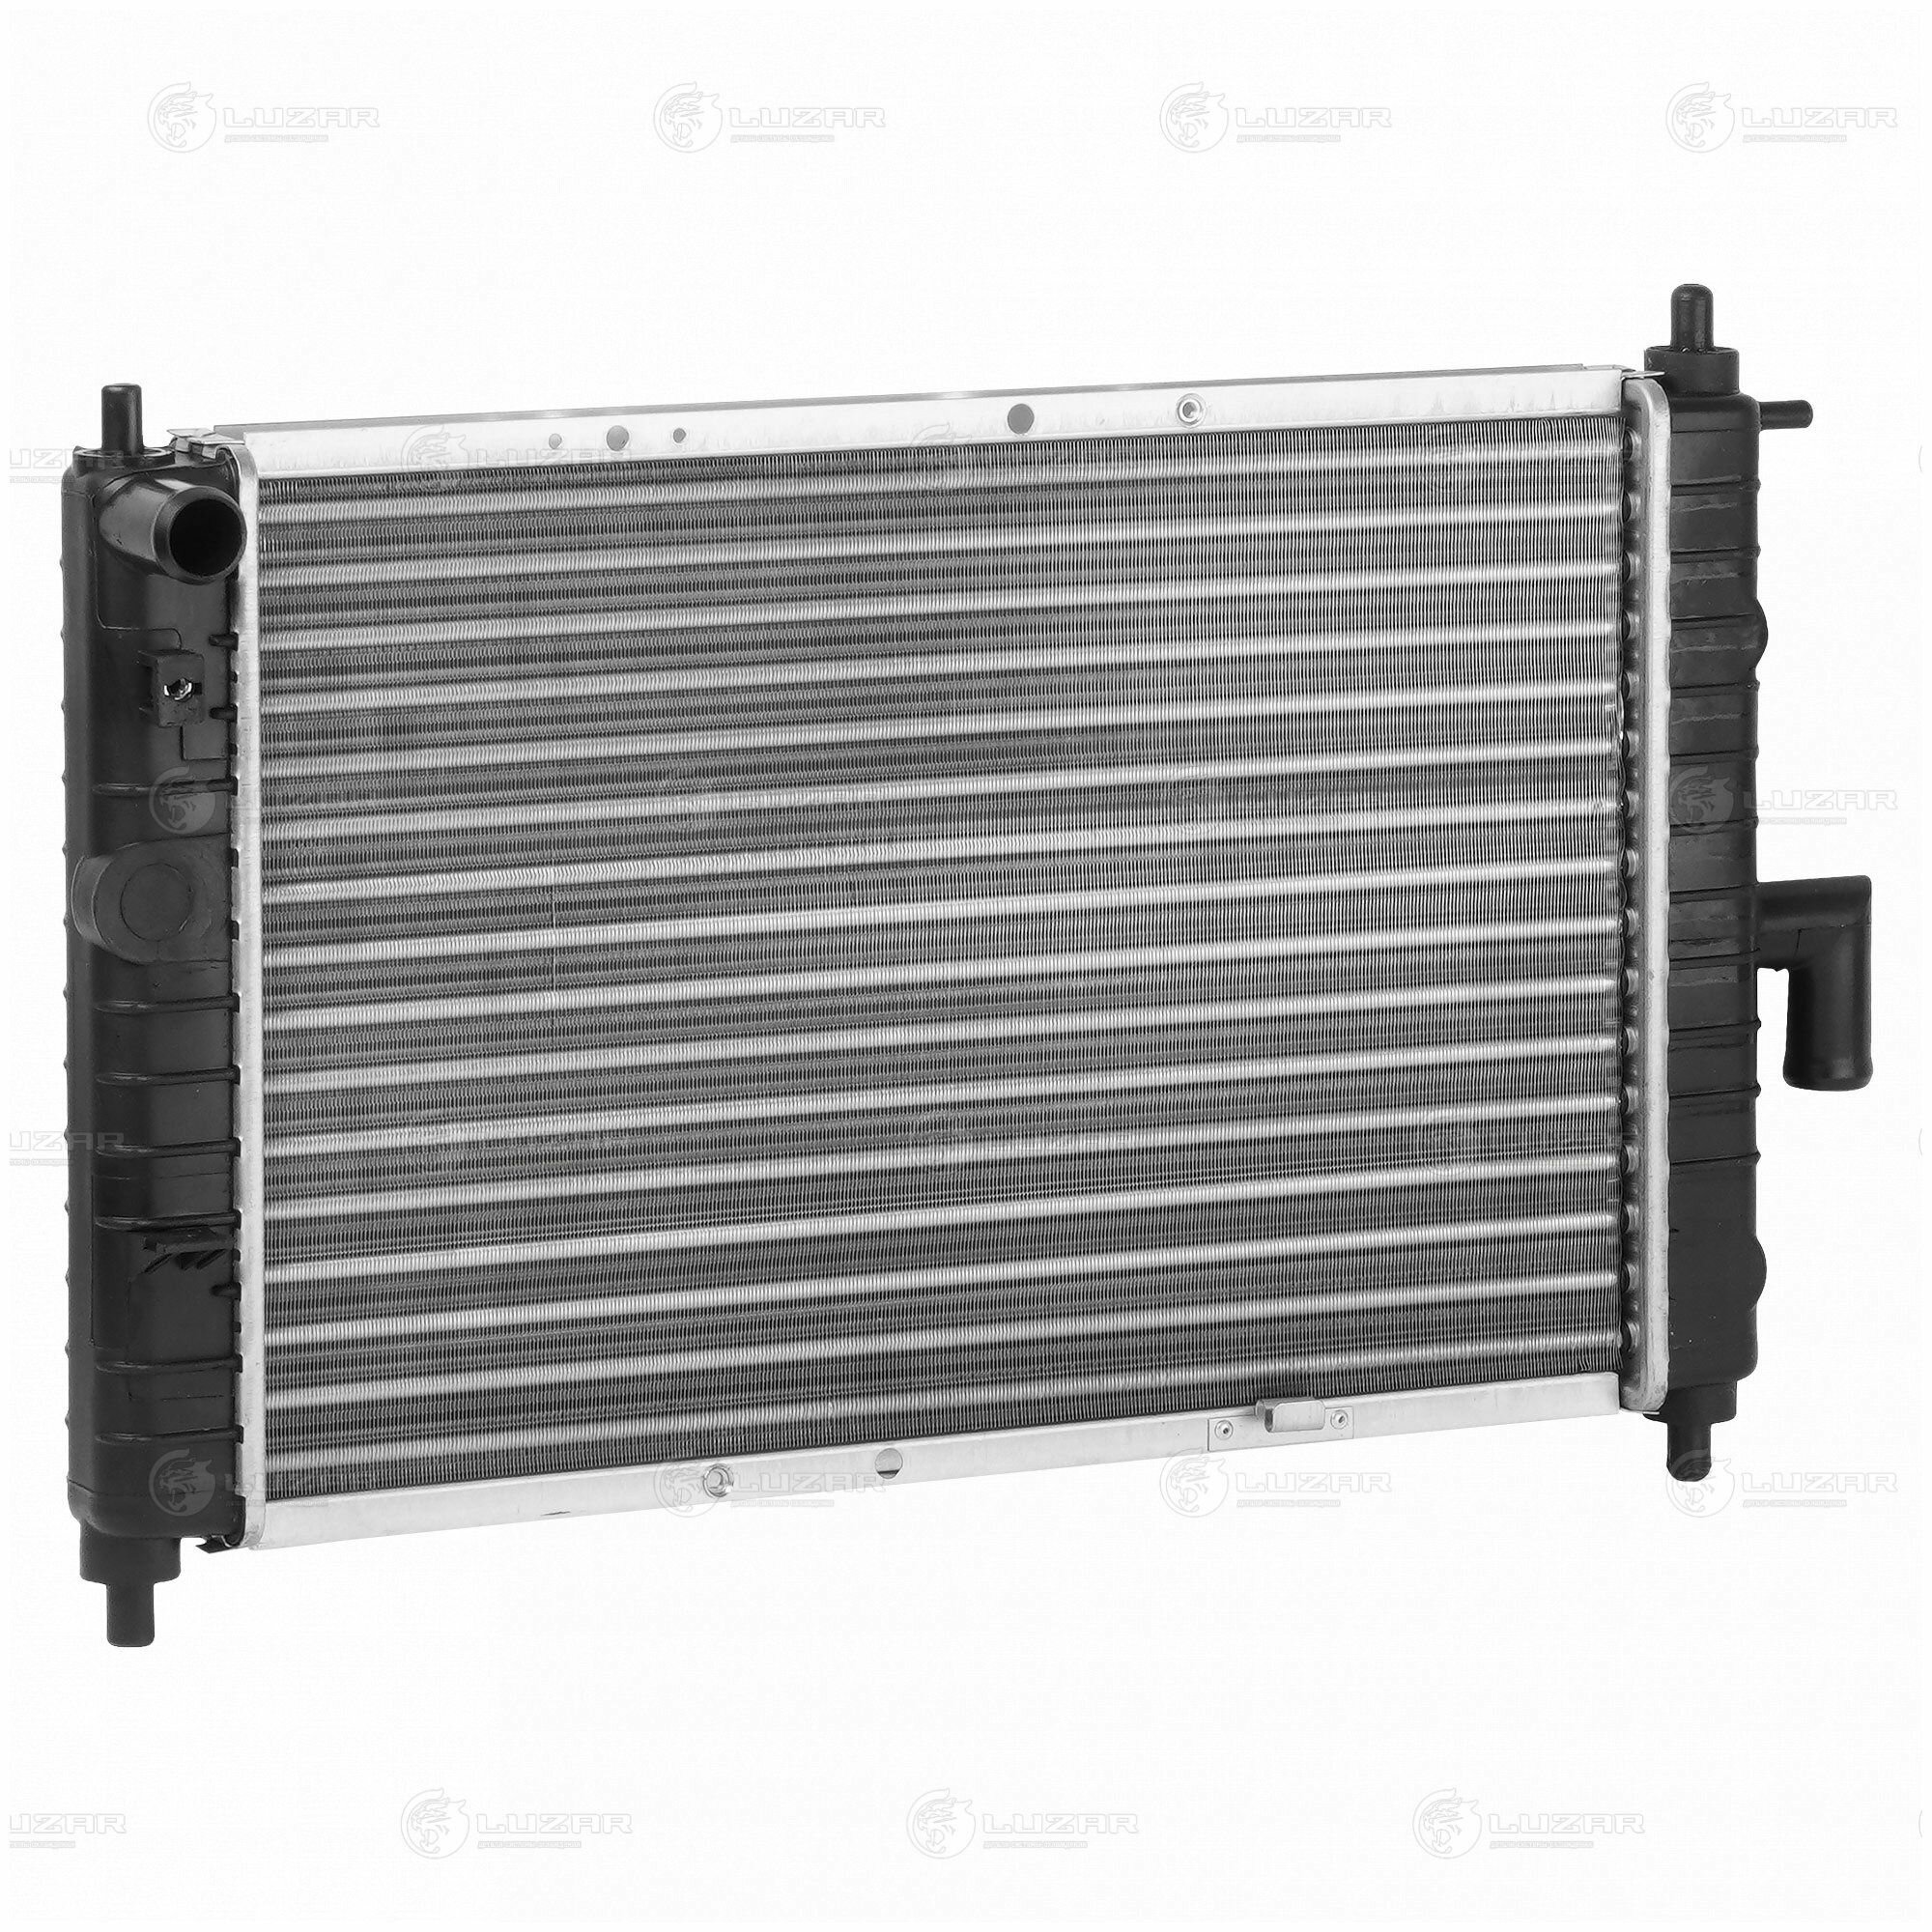 Радиатор охлаждения для а/м Daewoo Matiz 01- 0.8i/1.0i MT сборный Luzar LRc0508 (1 шт)